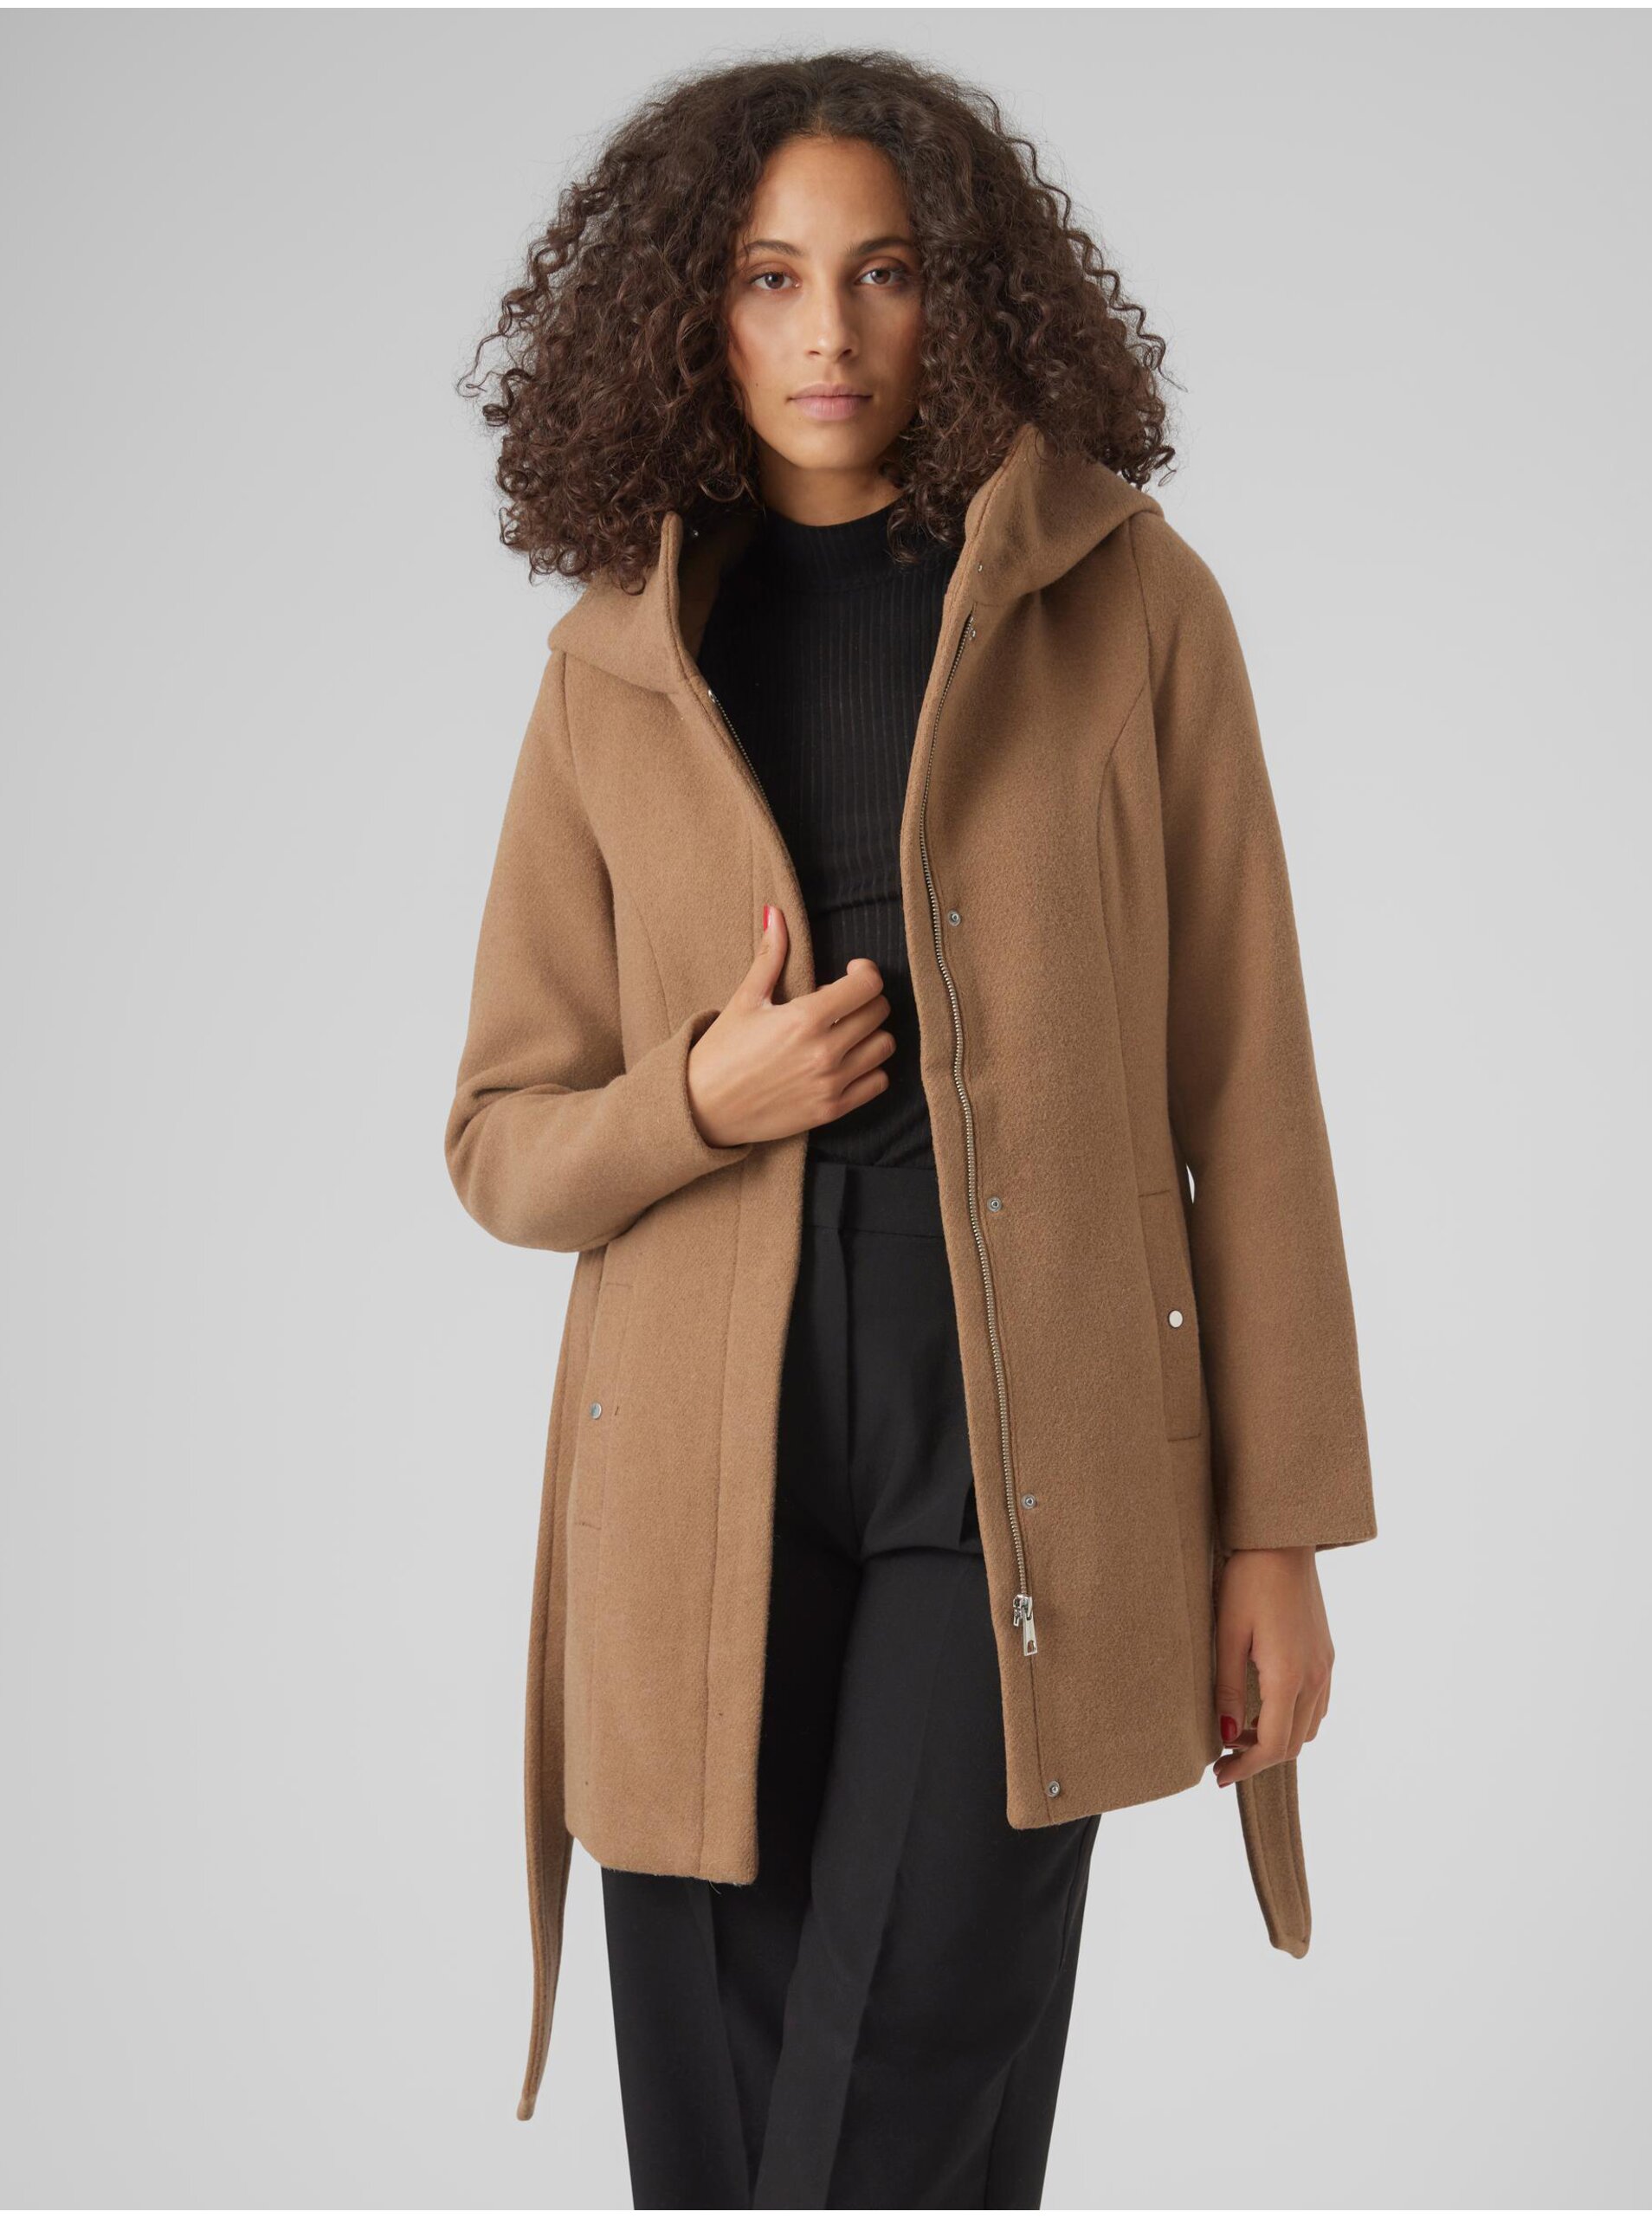 Women's brown coat VERO MODA Classliva - Women